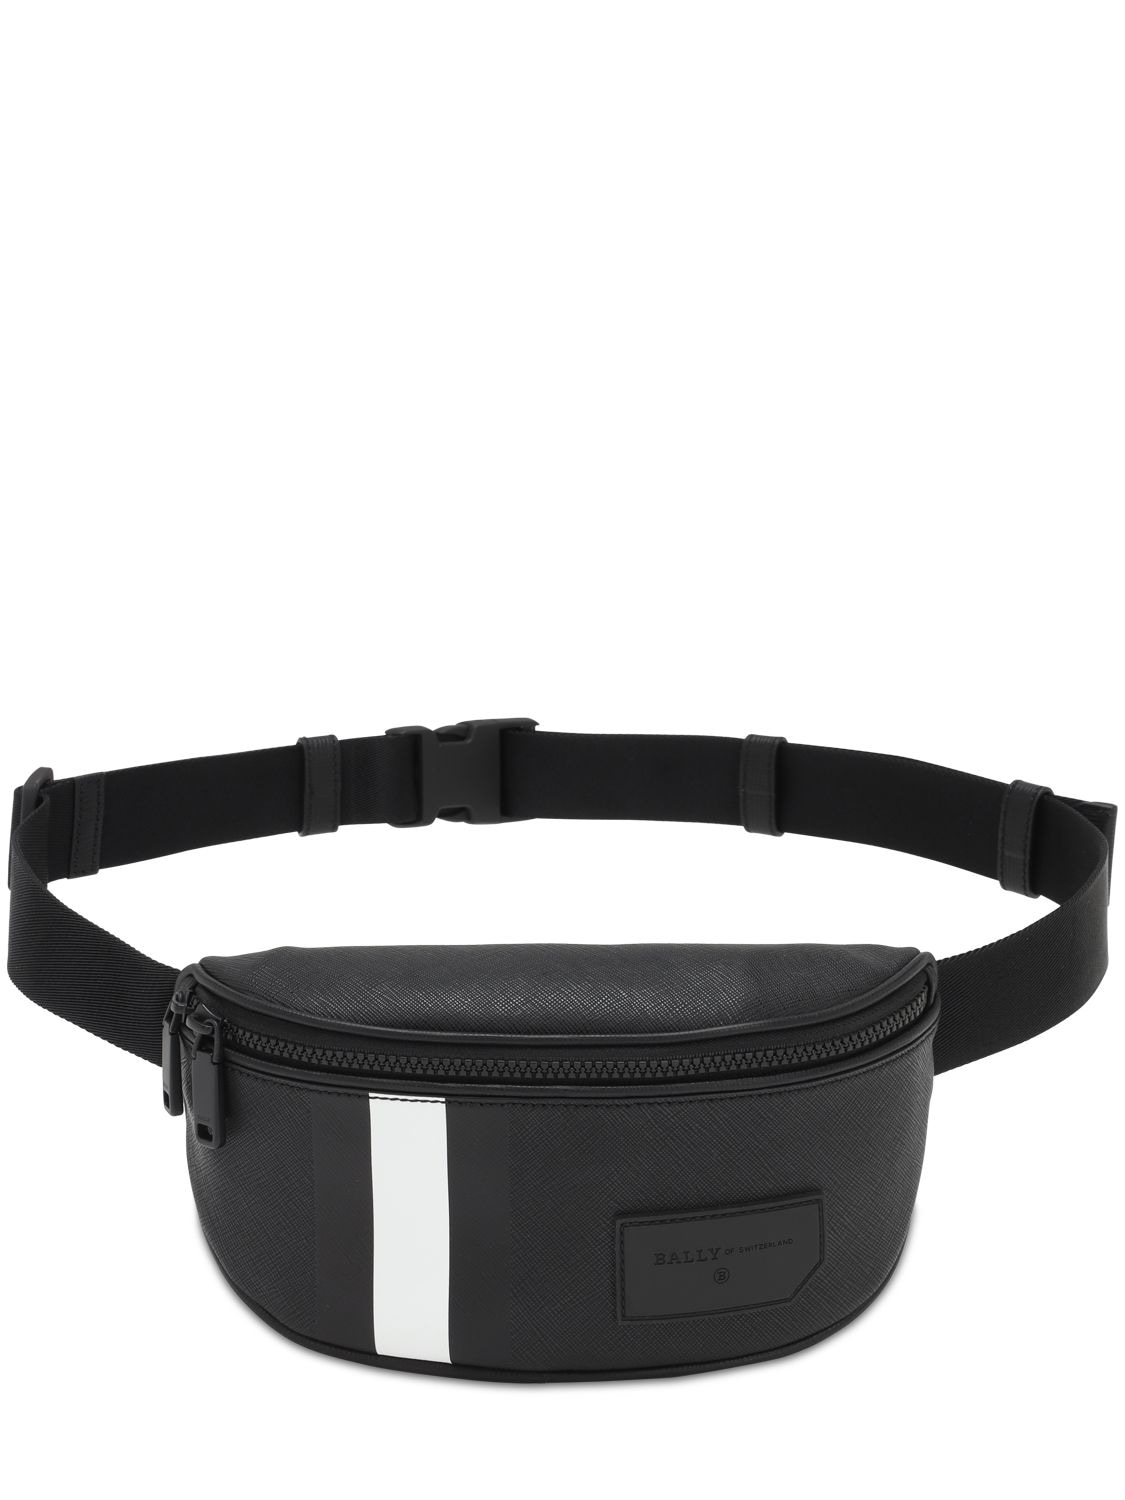 Bally Logo Stripe Pvc Mini Belt Bag In Black